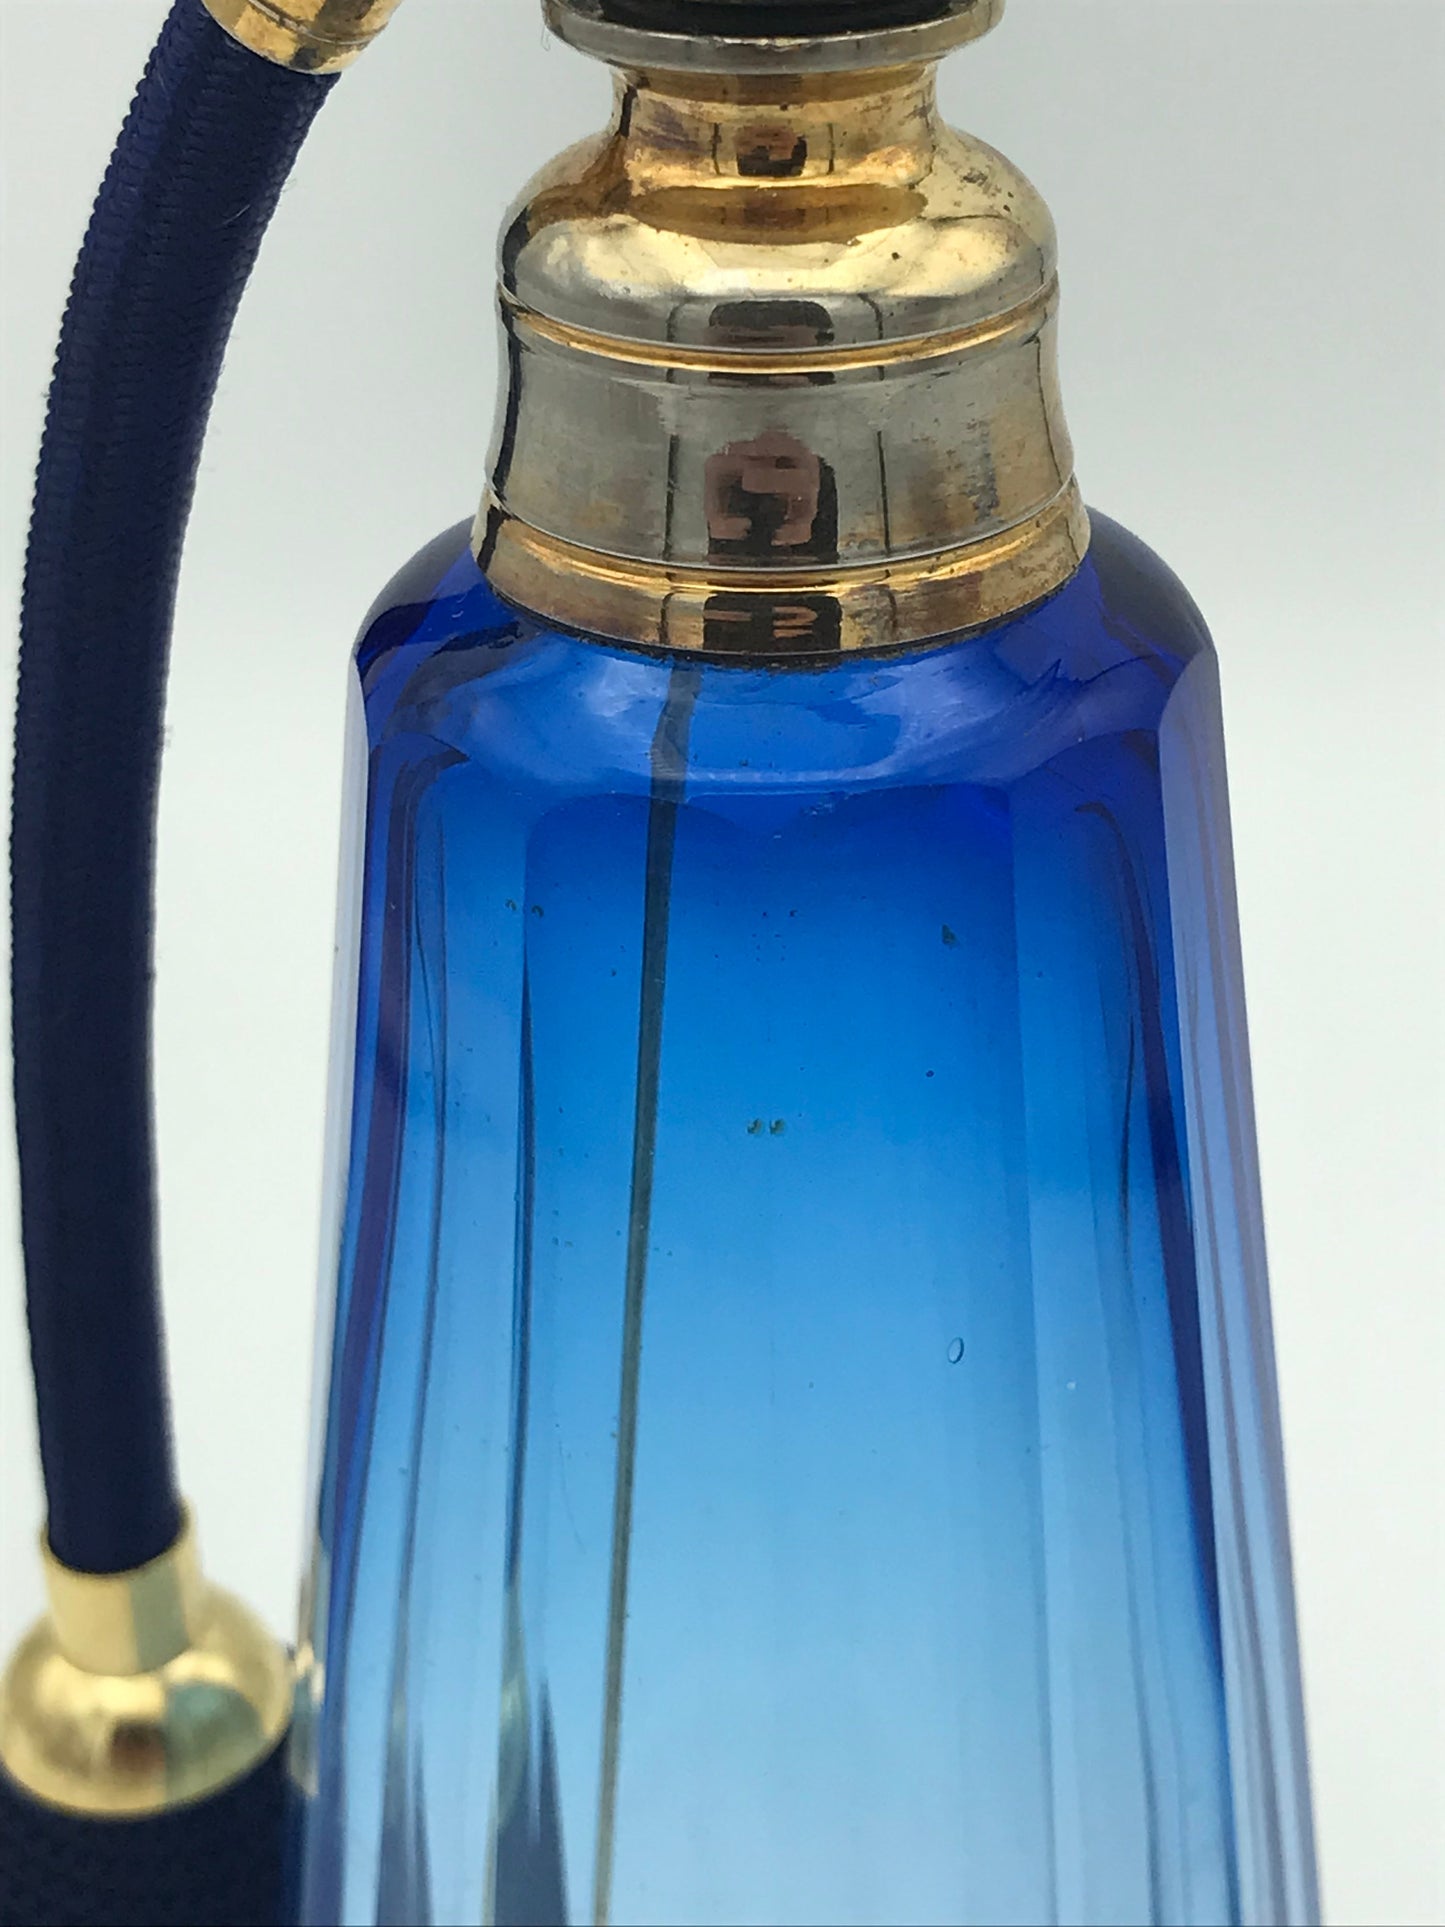 Vaporisateur à parfum cristal bleu - Premium Vaporisateur à parfum from Atelier Guillot - Just €380! Shop now at Atelier Guillot